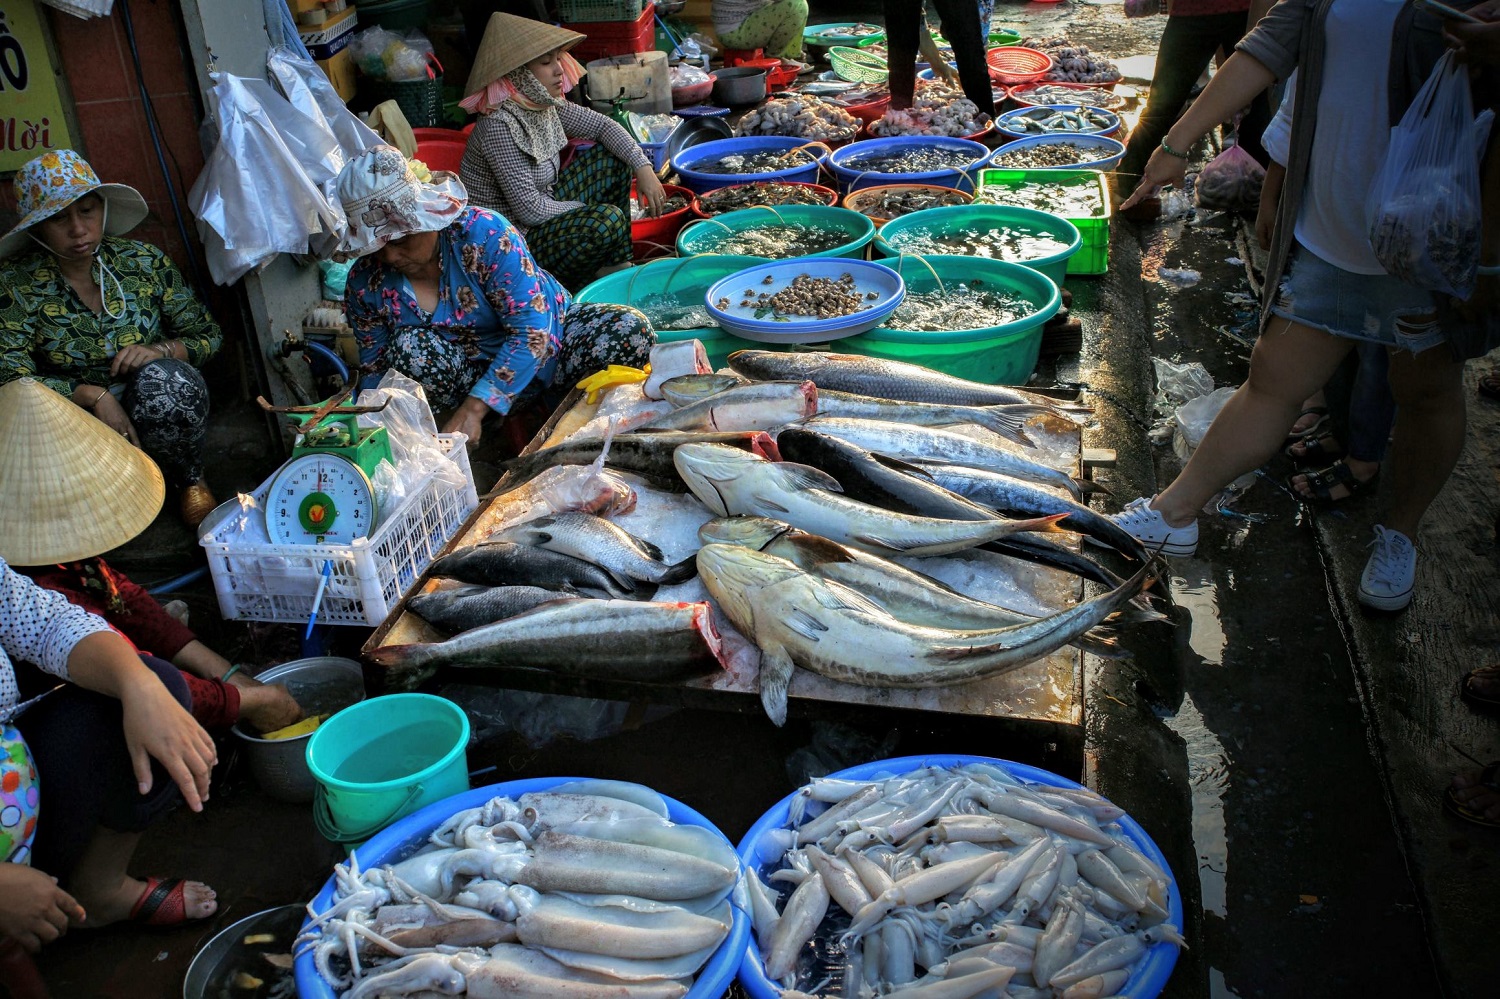 Nếu muốn thưởng thức hải sản tươi ngon nhất, buổi nào trong ngày là lý tưởng để đến chợ hải sản Xóm Lưới?
